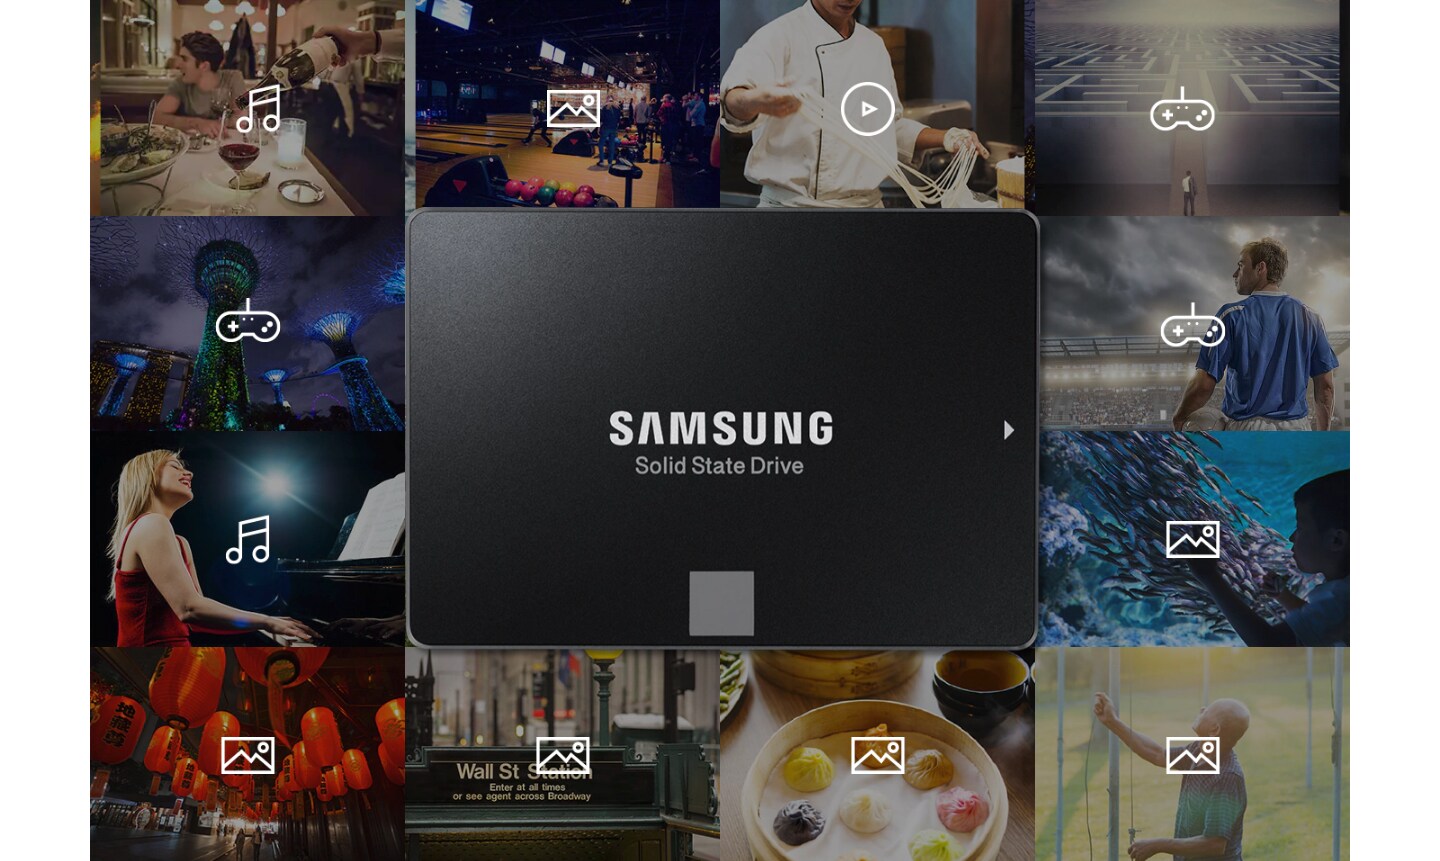 Samsung SSD связан с информацией, такой как музыка, фотографии, видео и игры, возникающие в результате различных повседневных мероприятий (производительность, спорт, кулинария, еда, занятия на свежем воздухе и т. Д.)